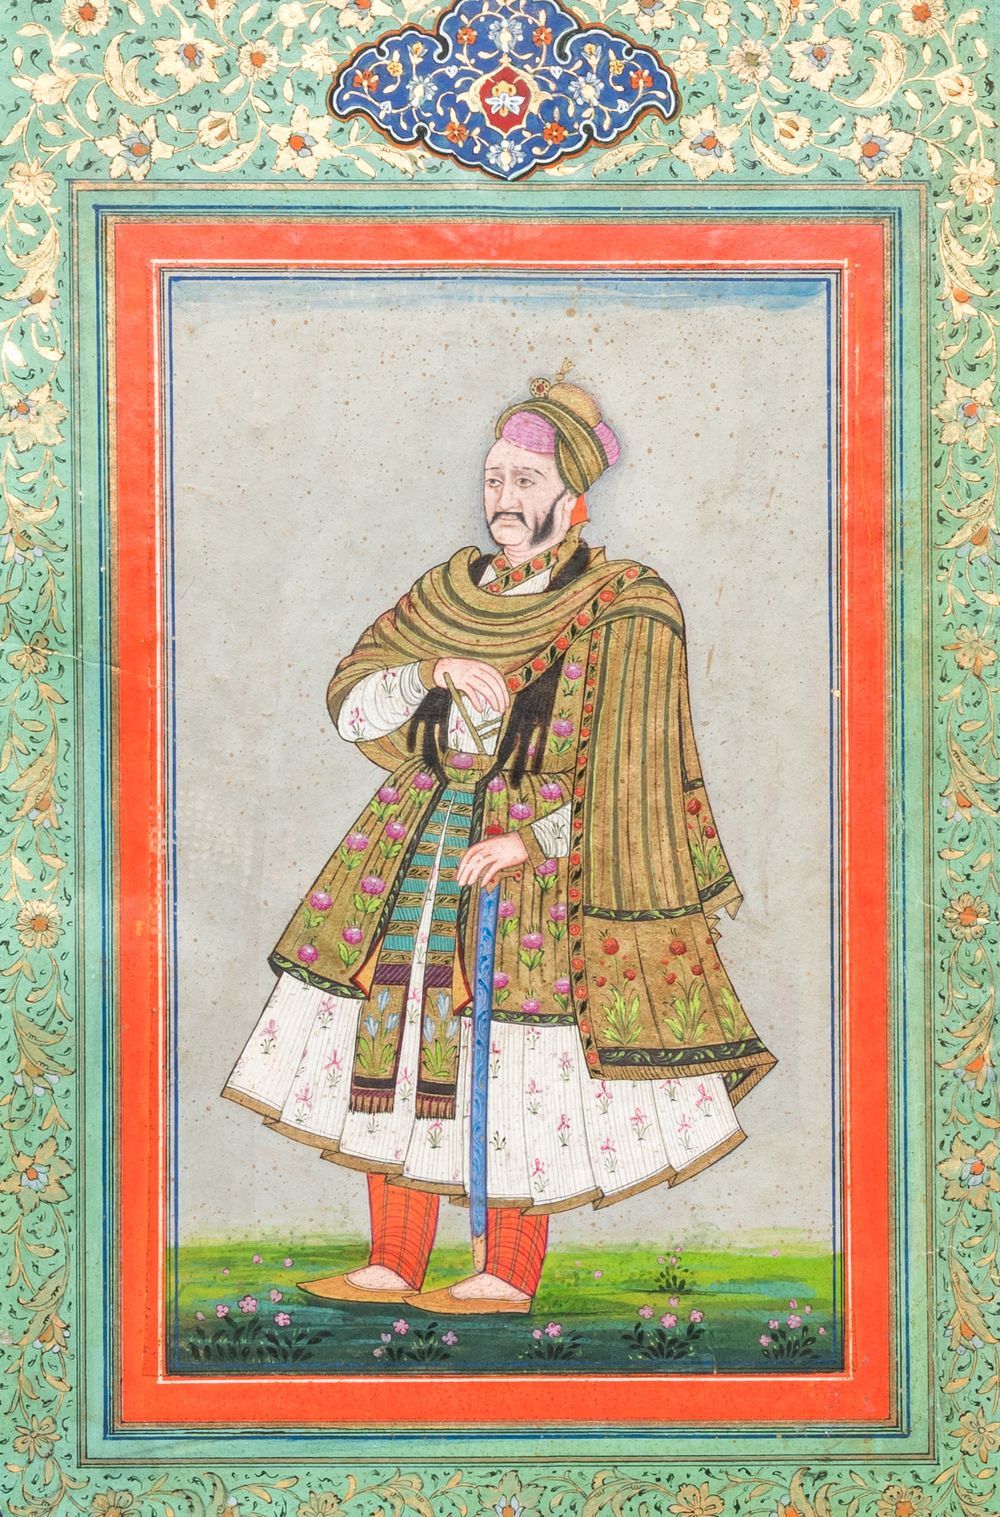 Ecole indienne, miniature: 'Portrait du sultan Abdullah Qutb Shah'